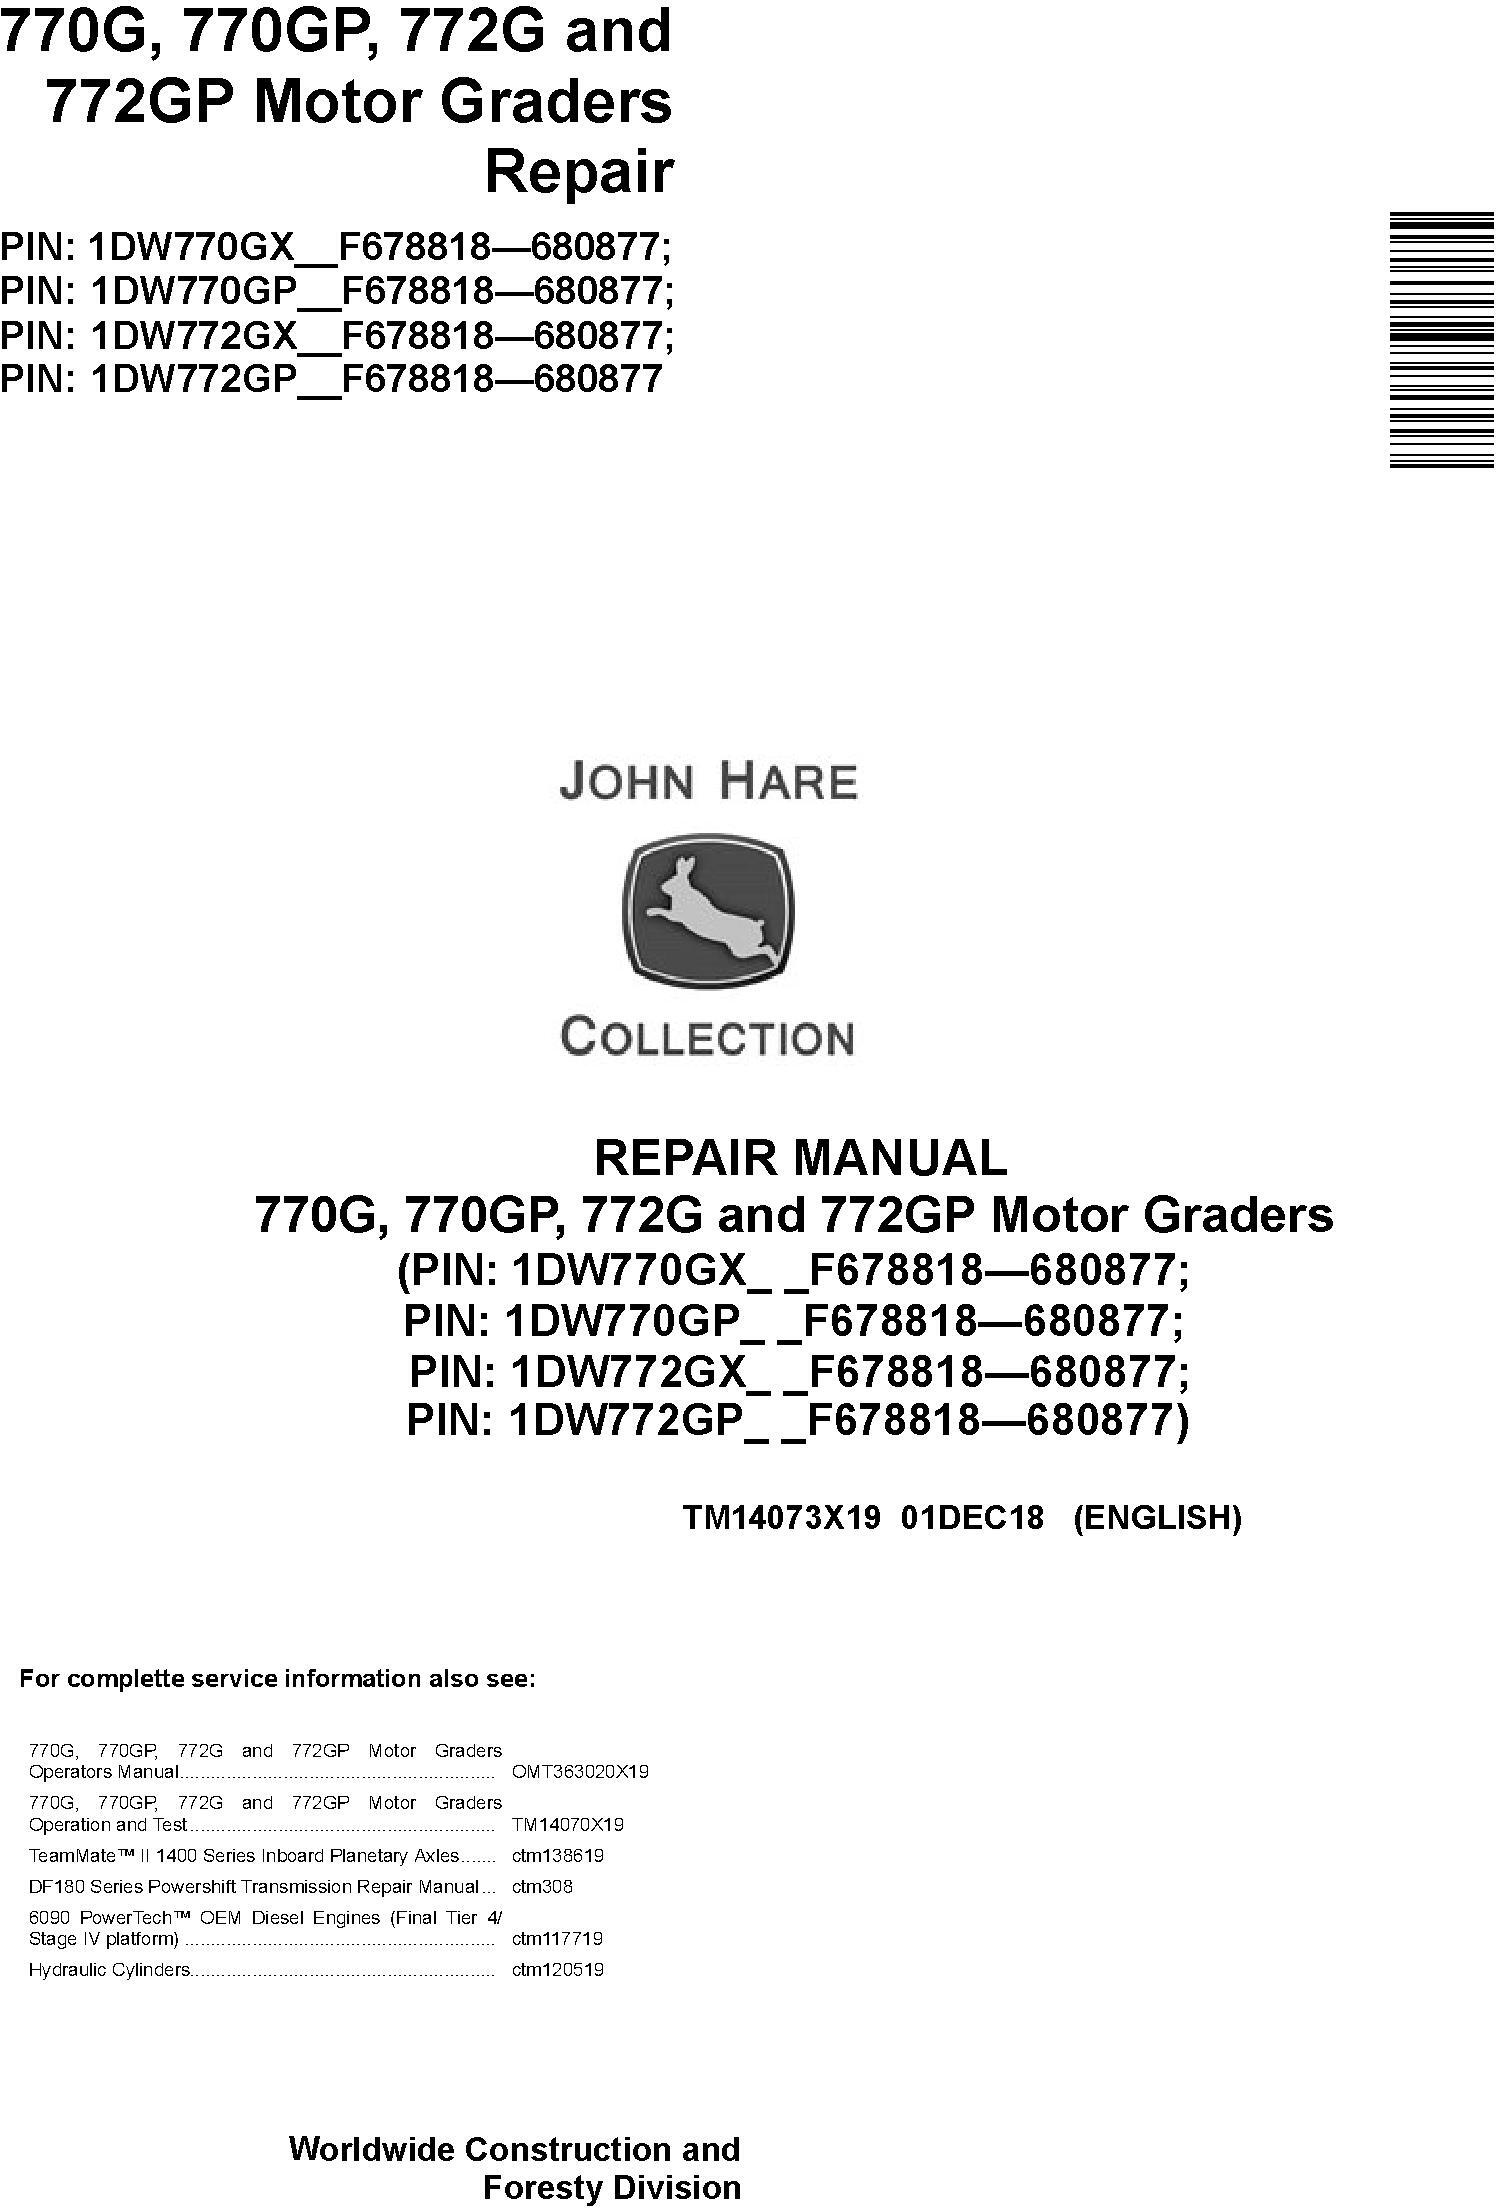 John Deere 770G, 770GP, 772G, 772GP (SN. F678818-680877) Motor Graders Repair Manual (TM14073X19)